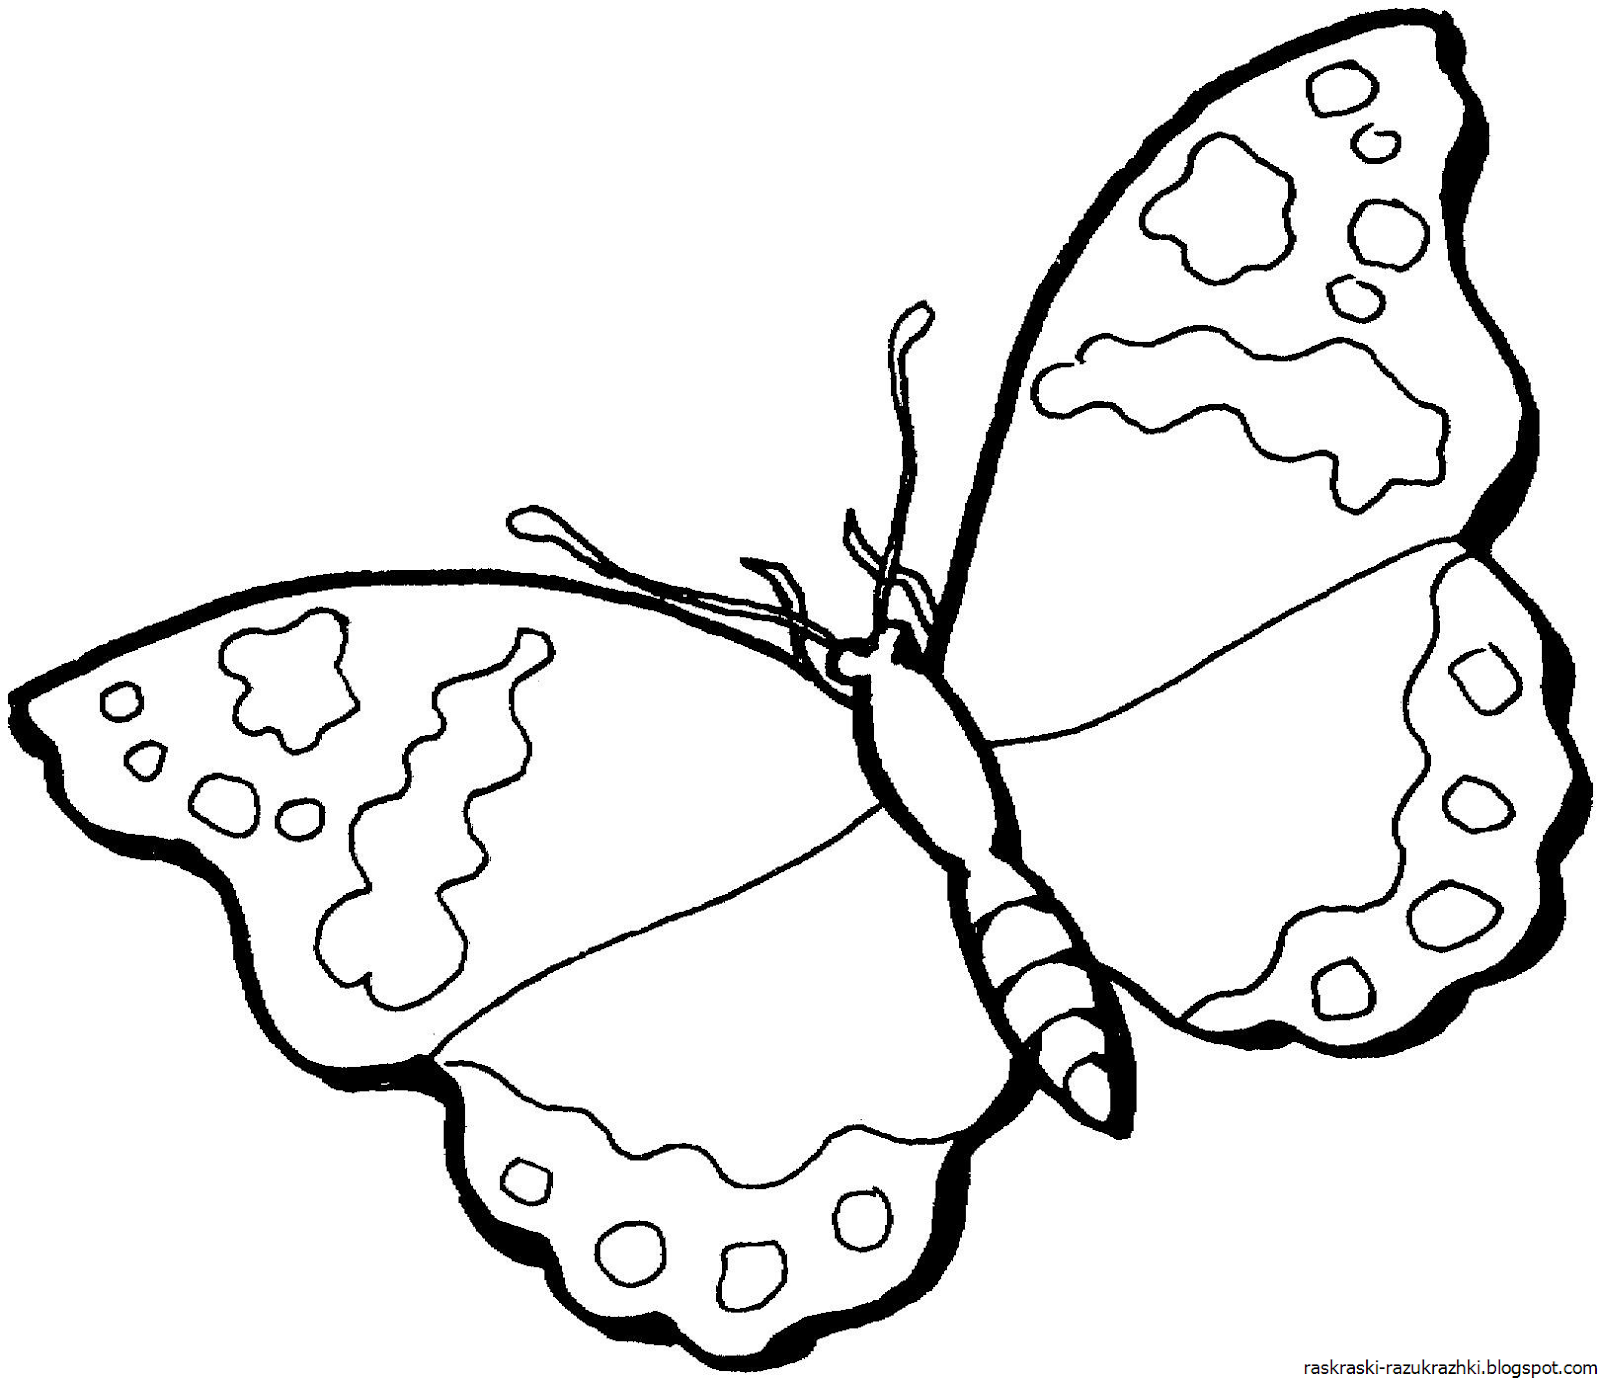 Раскраски для детей 4 5 бабочки. Раскраска "бабочки". Бабочка раскраска для детей. Рисунки дляраскршивания. Детские раскраски бабочки.